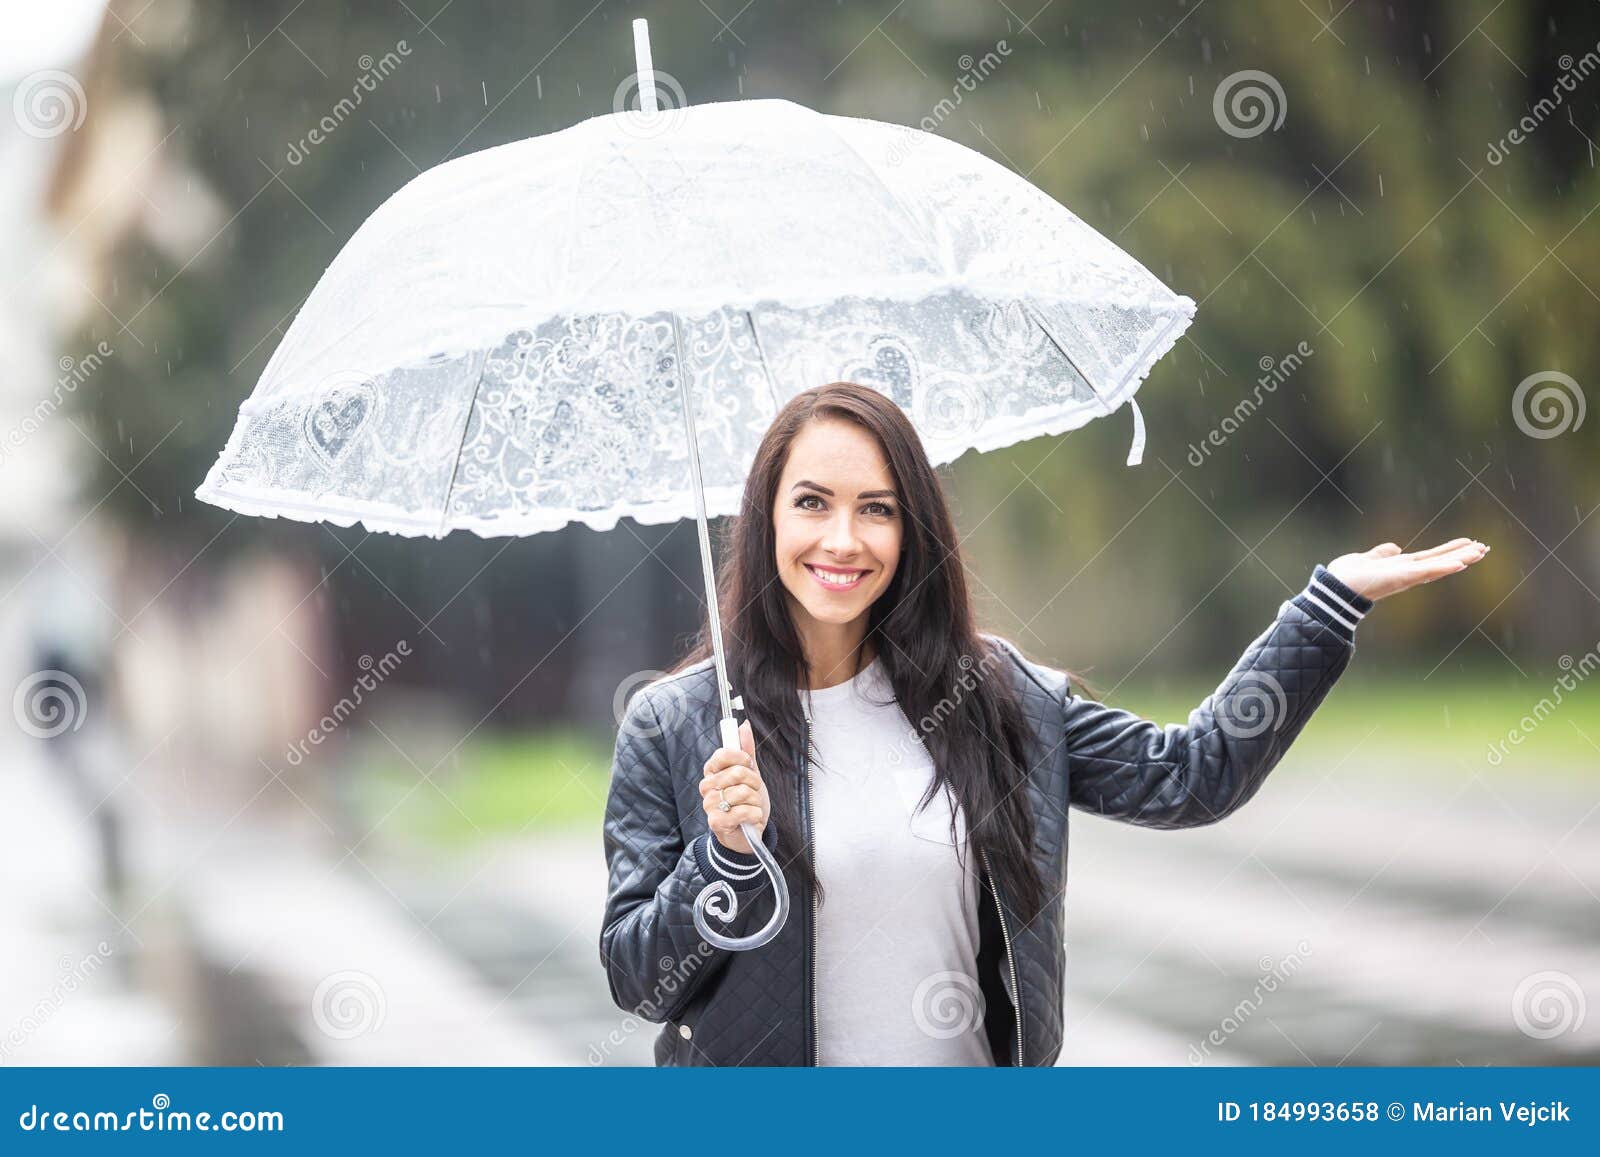 小清新拿着雨伞的女生设计可商用元素模板免费下载_psd格式_2000像素_编号32576151-千图网